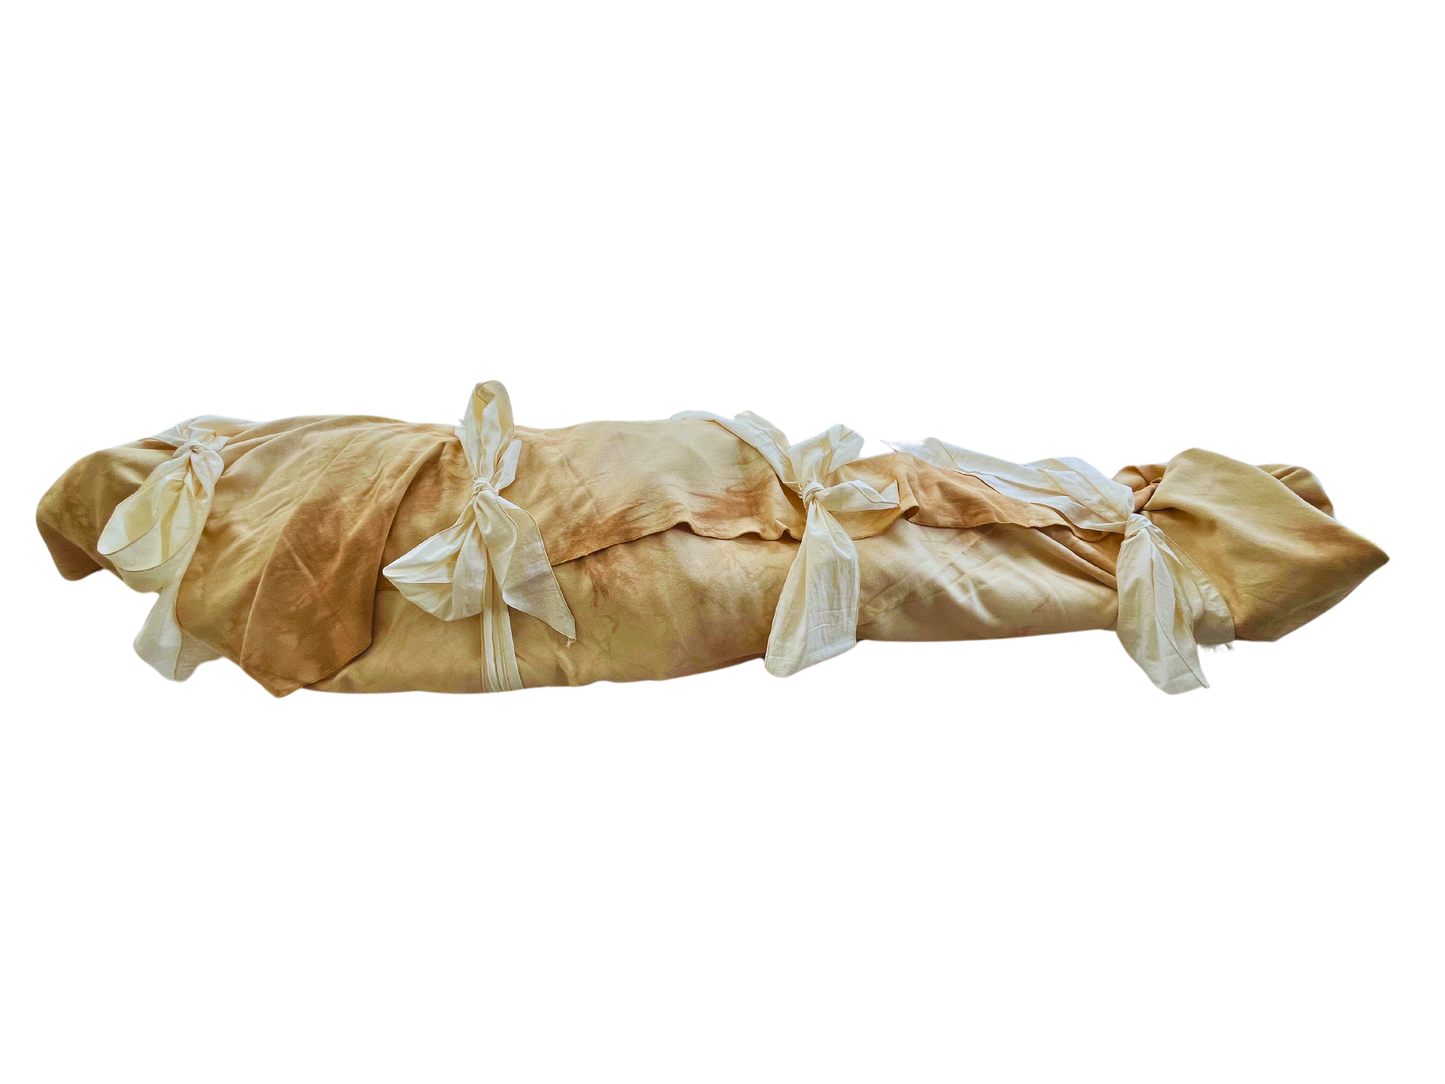 SANCTUM burial shroud (live model)